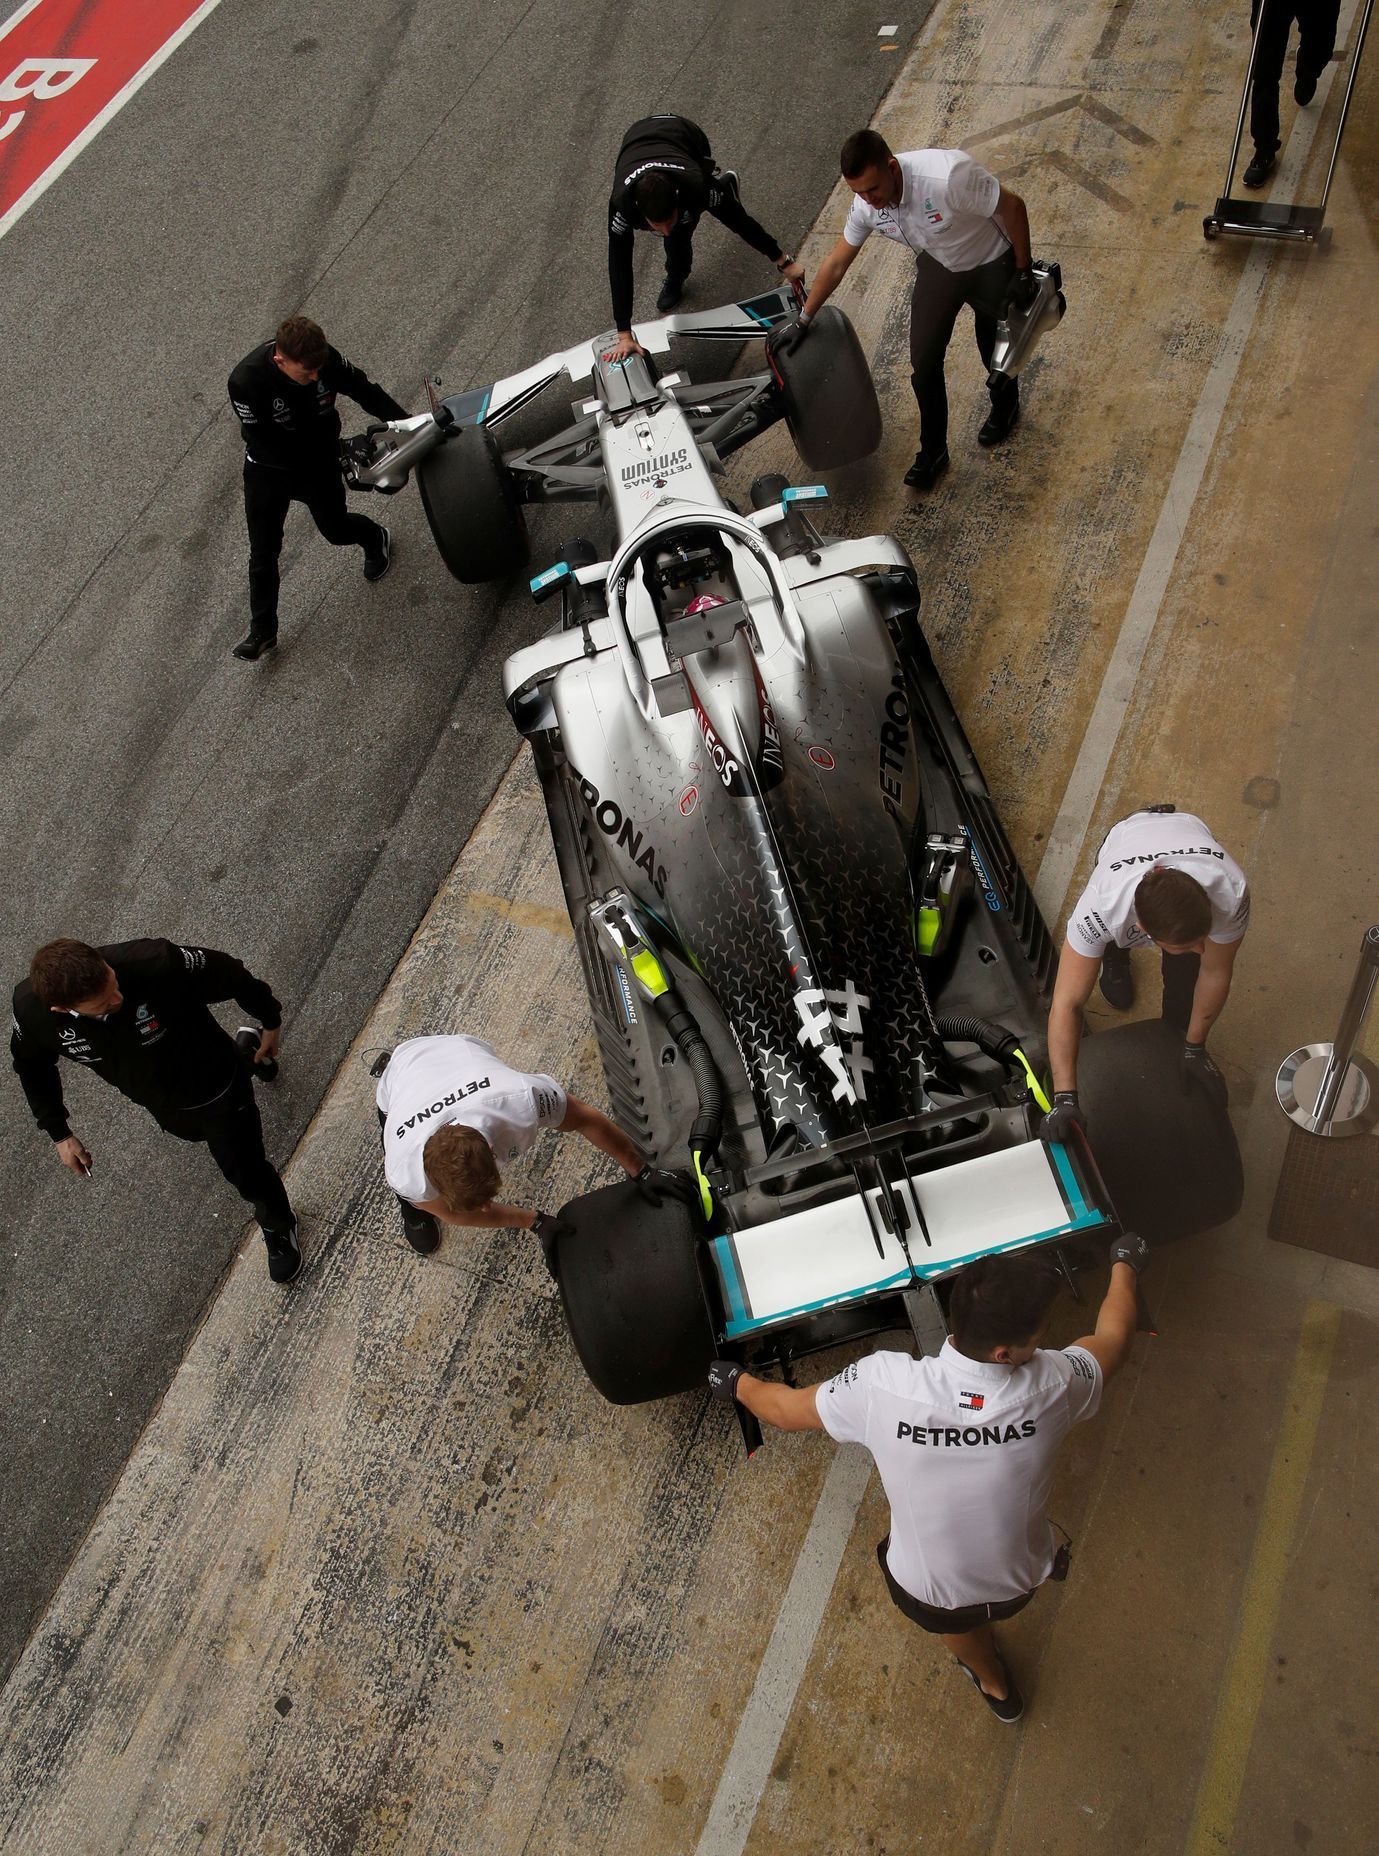 Lewis Hamilton v Mercedesu při druhých testech F1 v Barceloně 2020